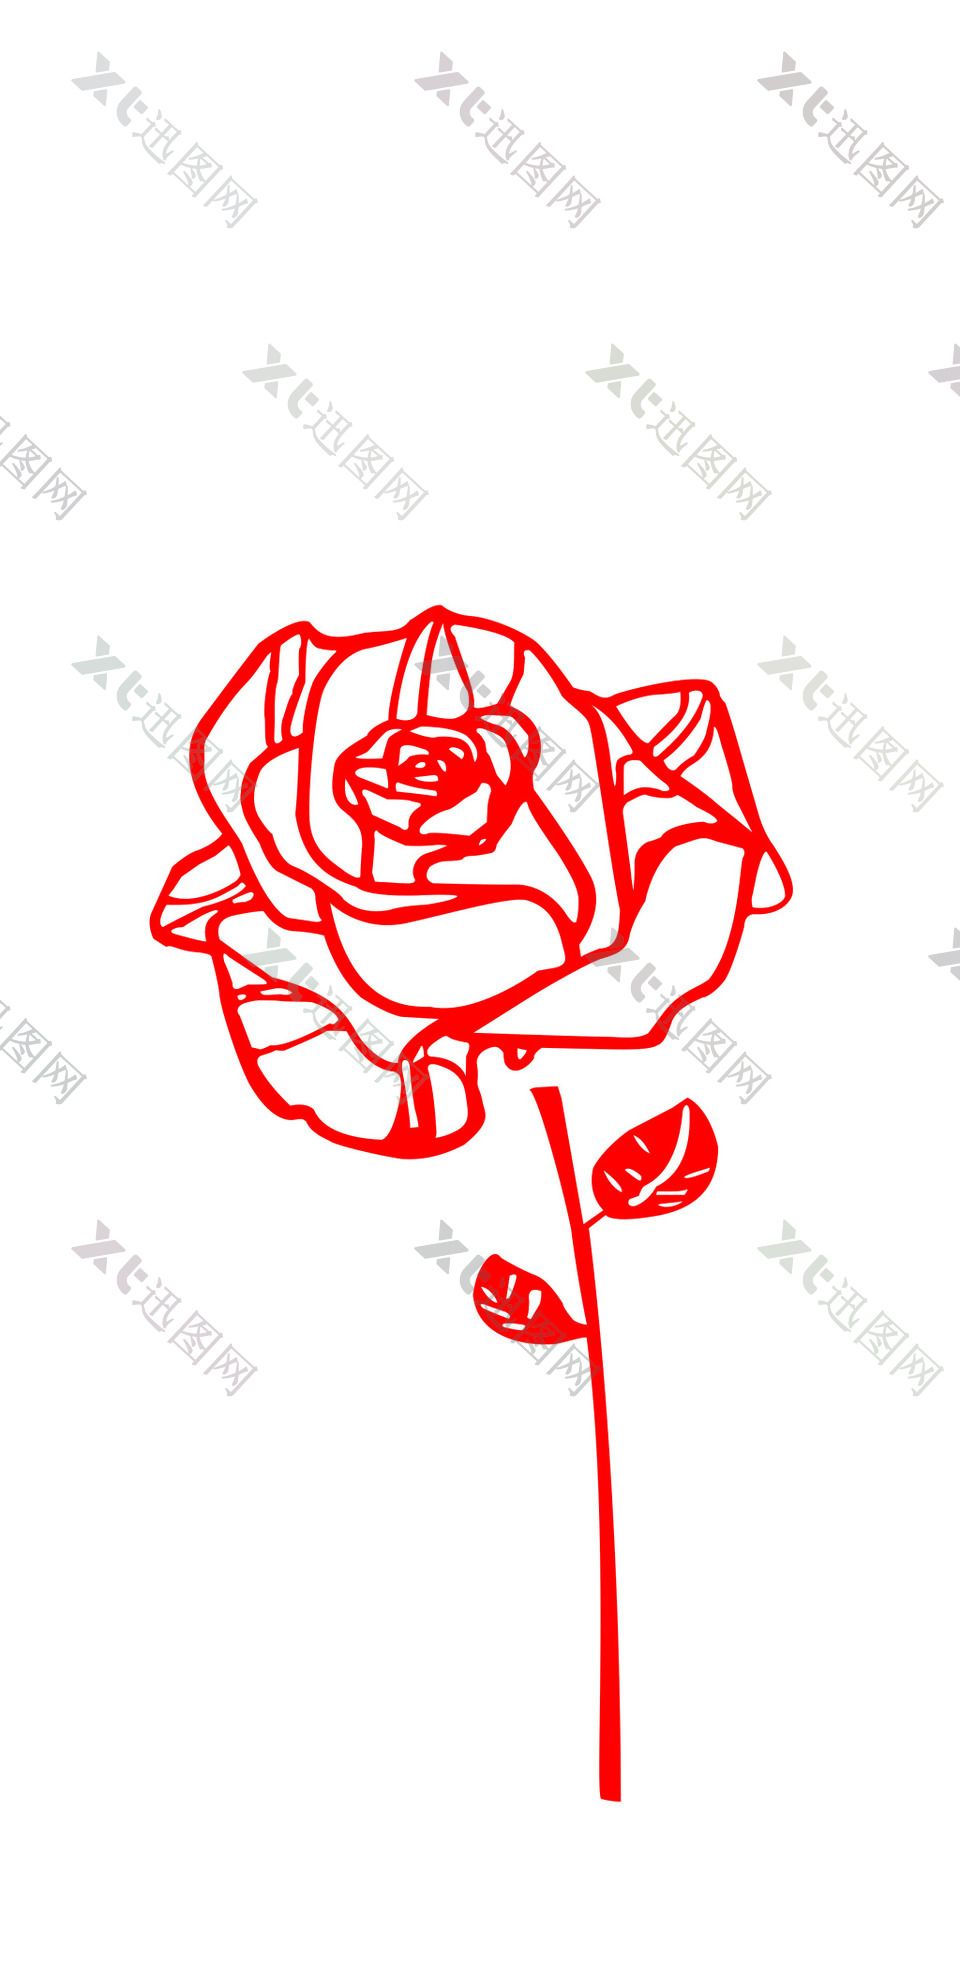 手绘红色玫瑰花